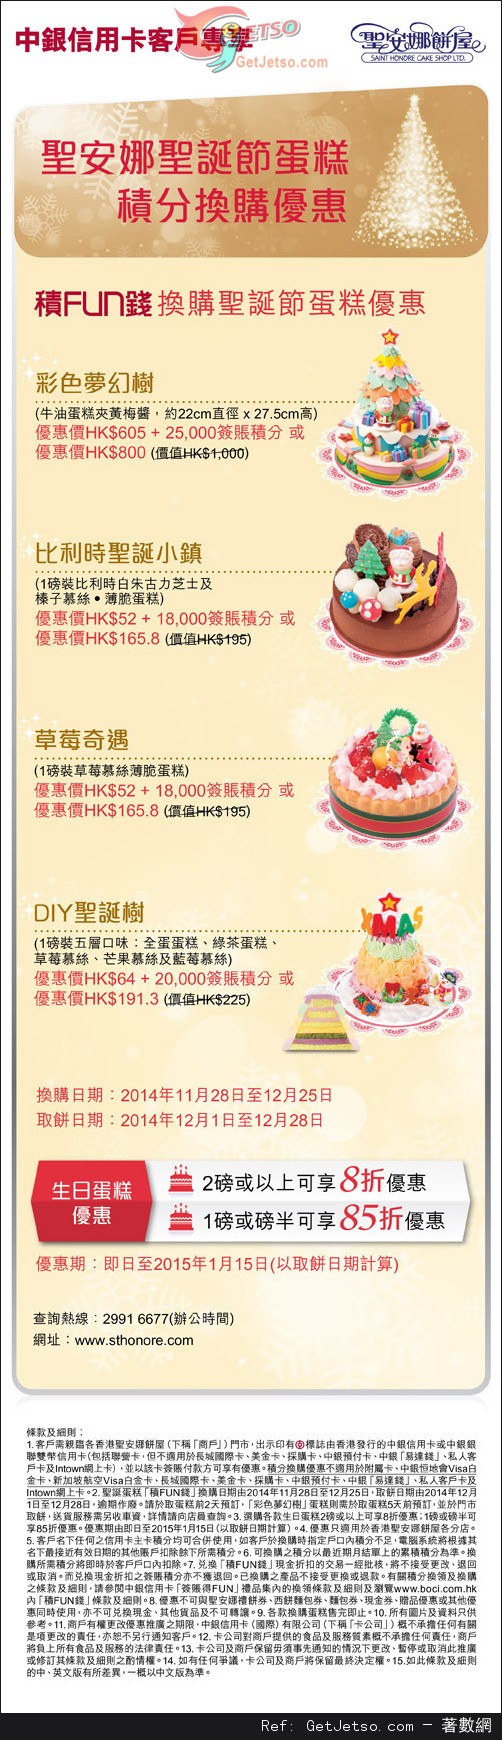 中銀信用卡享聖安娜餅屋聖誕蛋糕及生日蛋糕低至8折優惠(至15年1月15日)圖片1